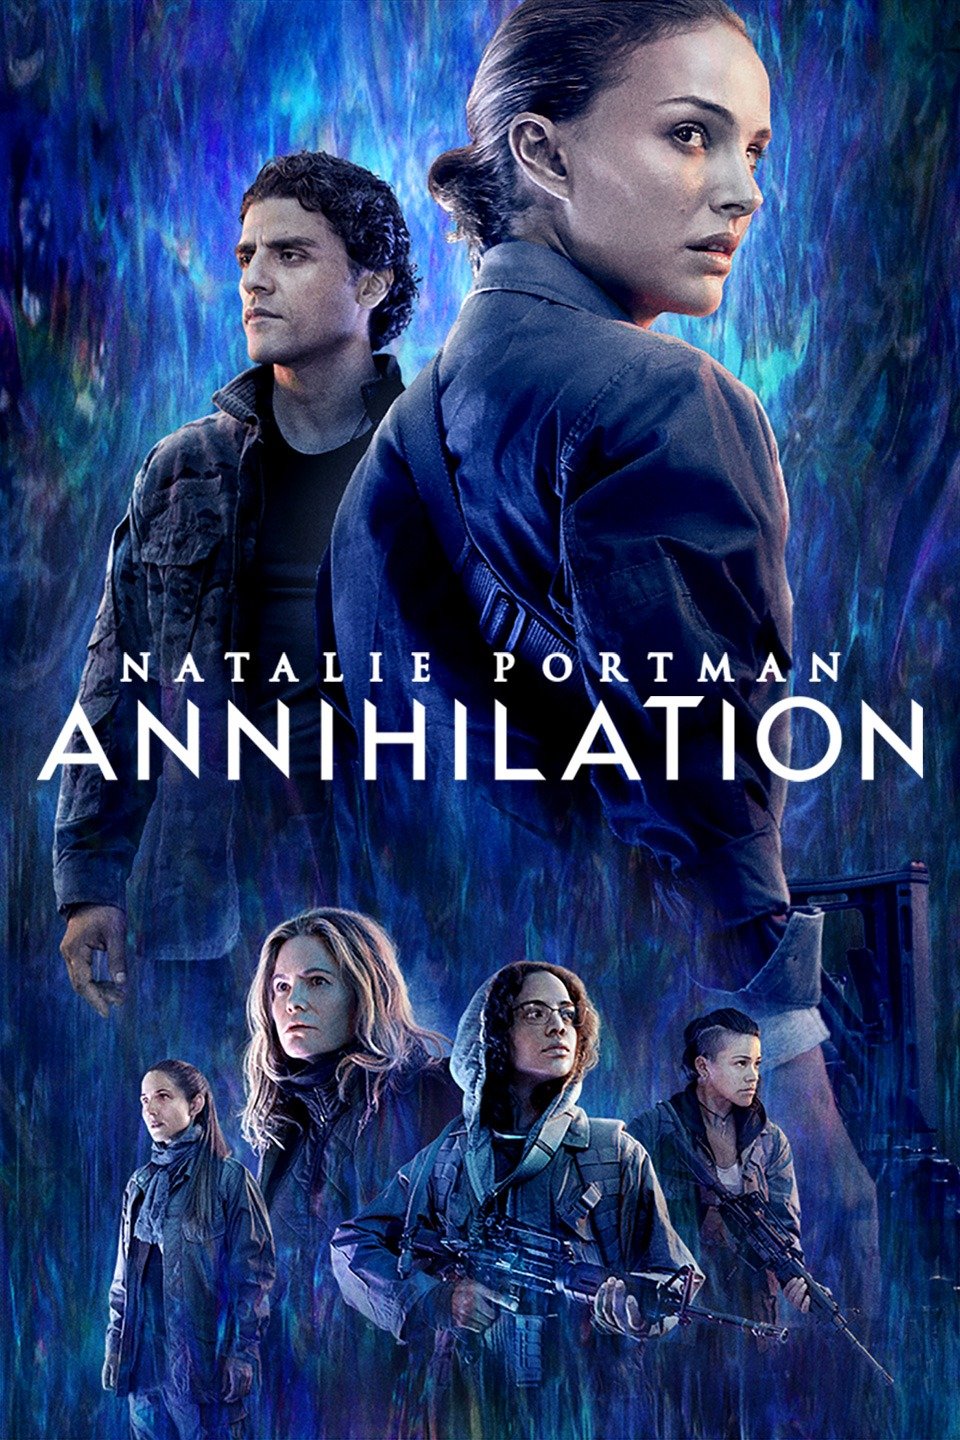 [ฝรั่ง] Annihilation (2018) แดนทำลายล้าง [1080p] [พากย์อังกฤษ DTS] [Soundtrack บรรยายไทย + อังกฤษ] [เสียงอังกฤษ + ซับไทย] [ONE2UP]